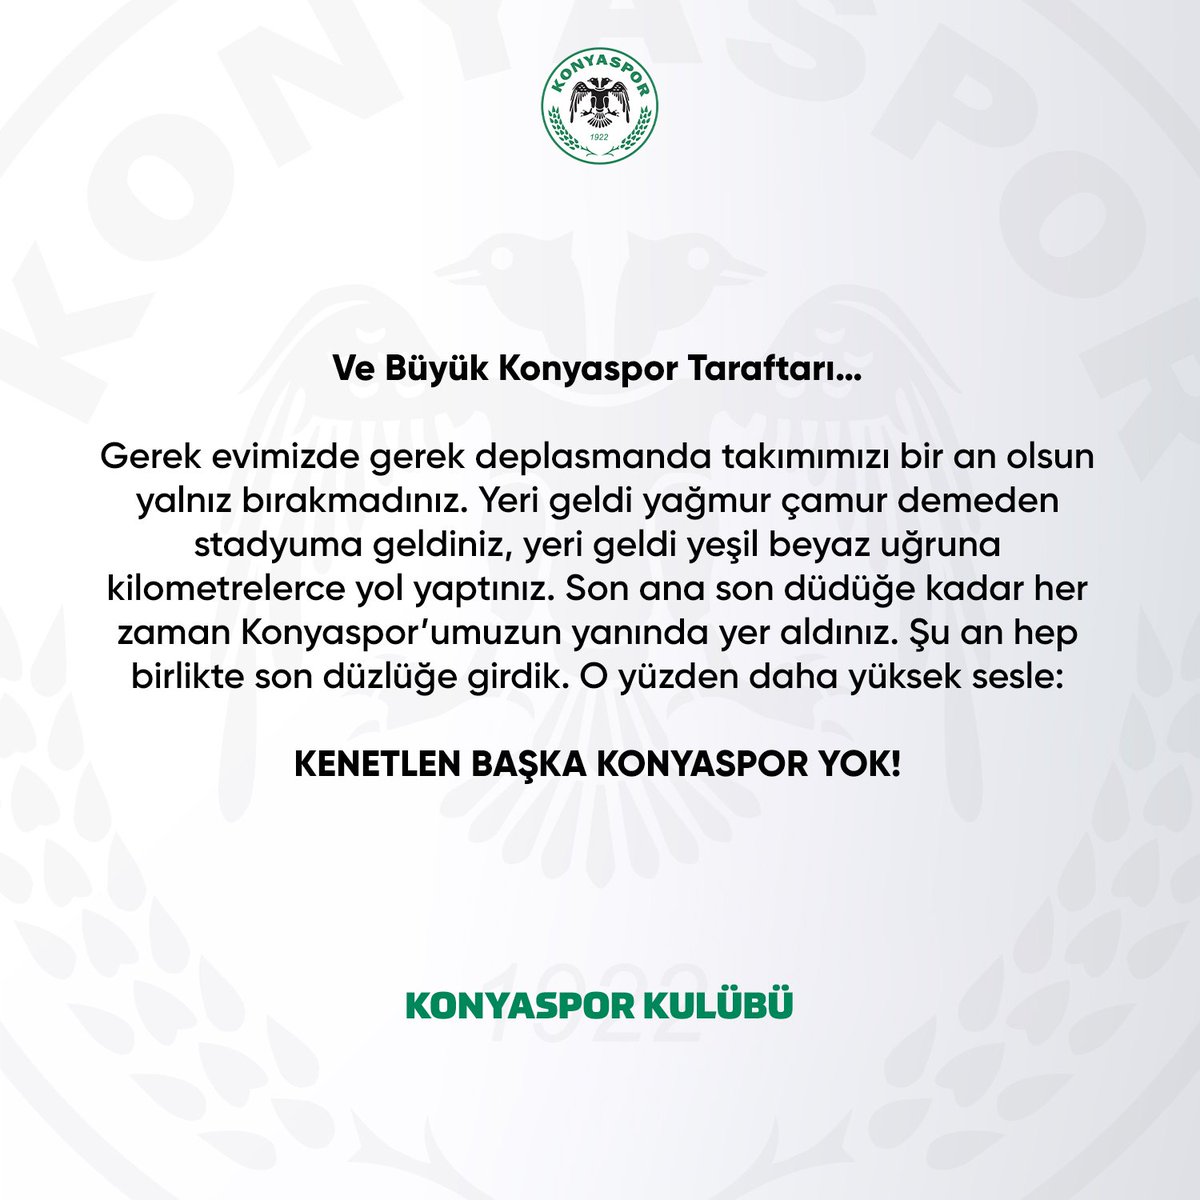 Konyaspor'dan açıklama: 'Şampiyonluk yarışına bakmaksızın sahaya çıkacak futbolcularımız, terinin son damlasına kadar mücadelesini verecek. Bundan kimsenin şüphesi olmasın.'